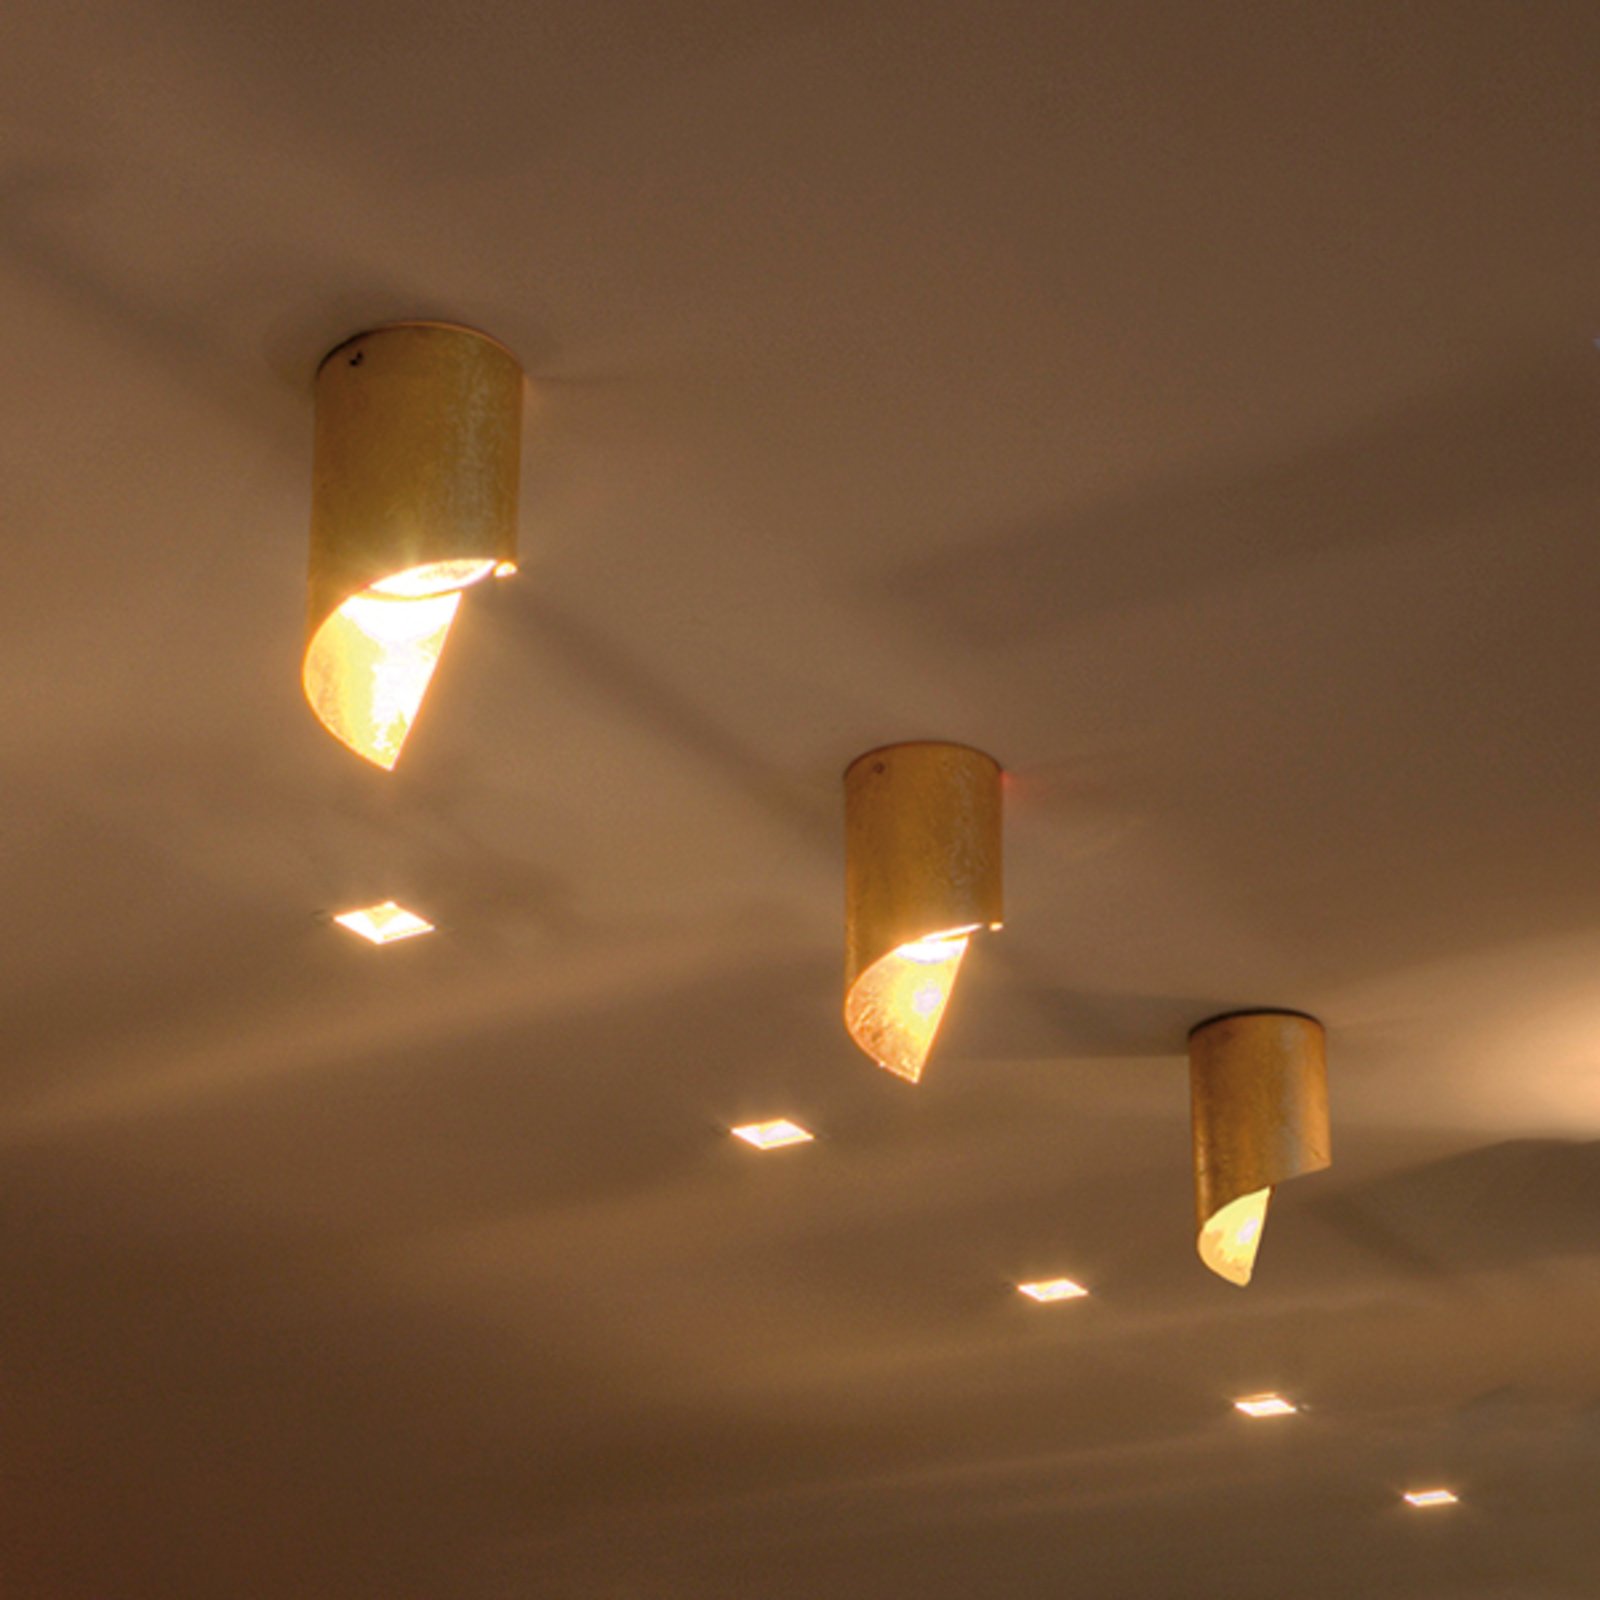 Knikerboker Hué LED ceiling light 8x15cm gold leaf